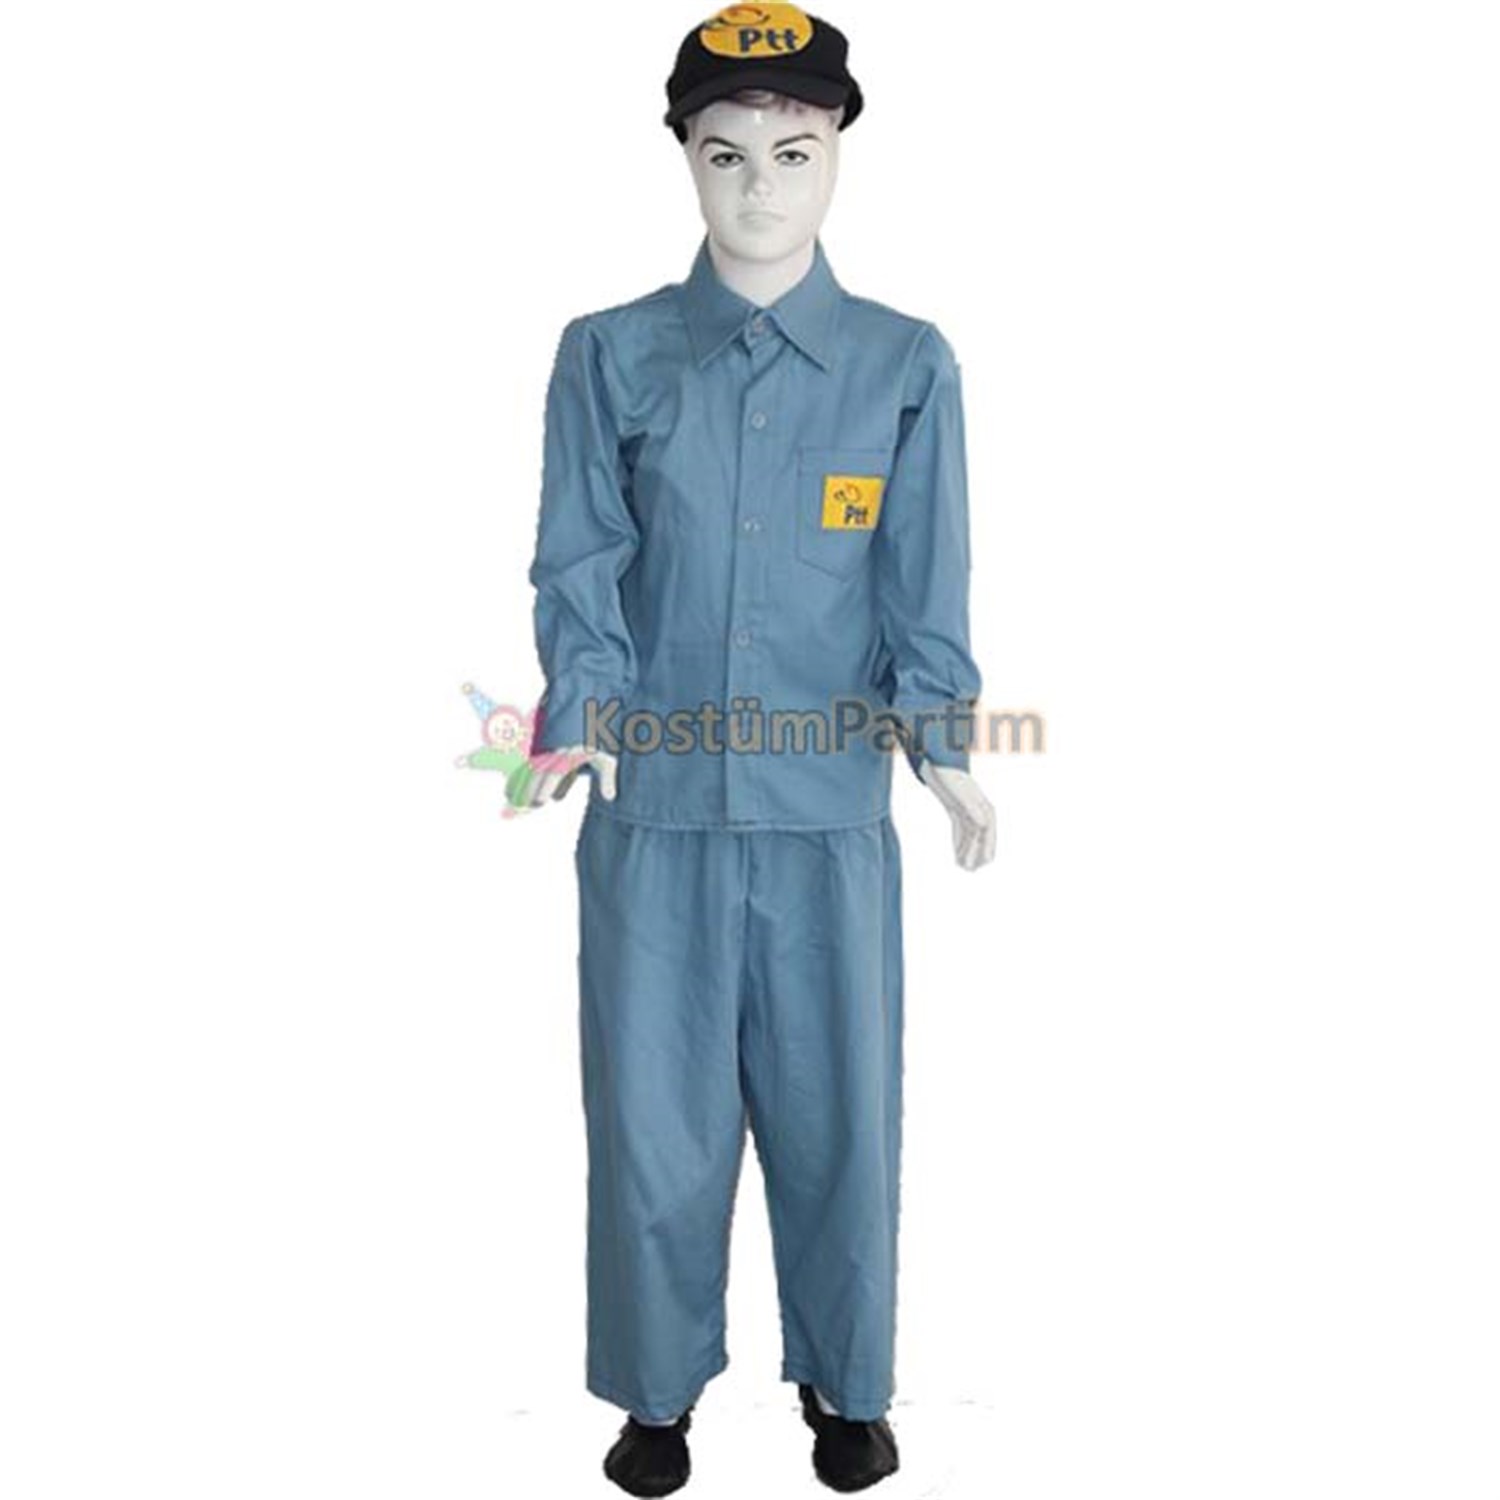 Postacı Kostümü, Çocuk Meslek Kıyafeti - KostümPartim®